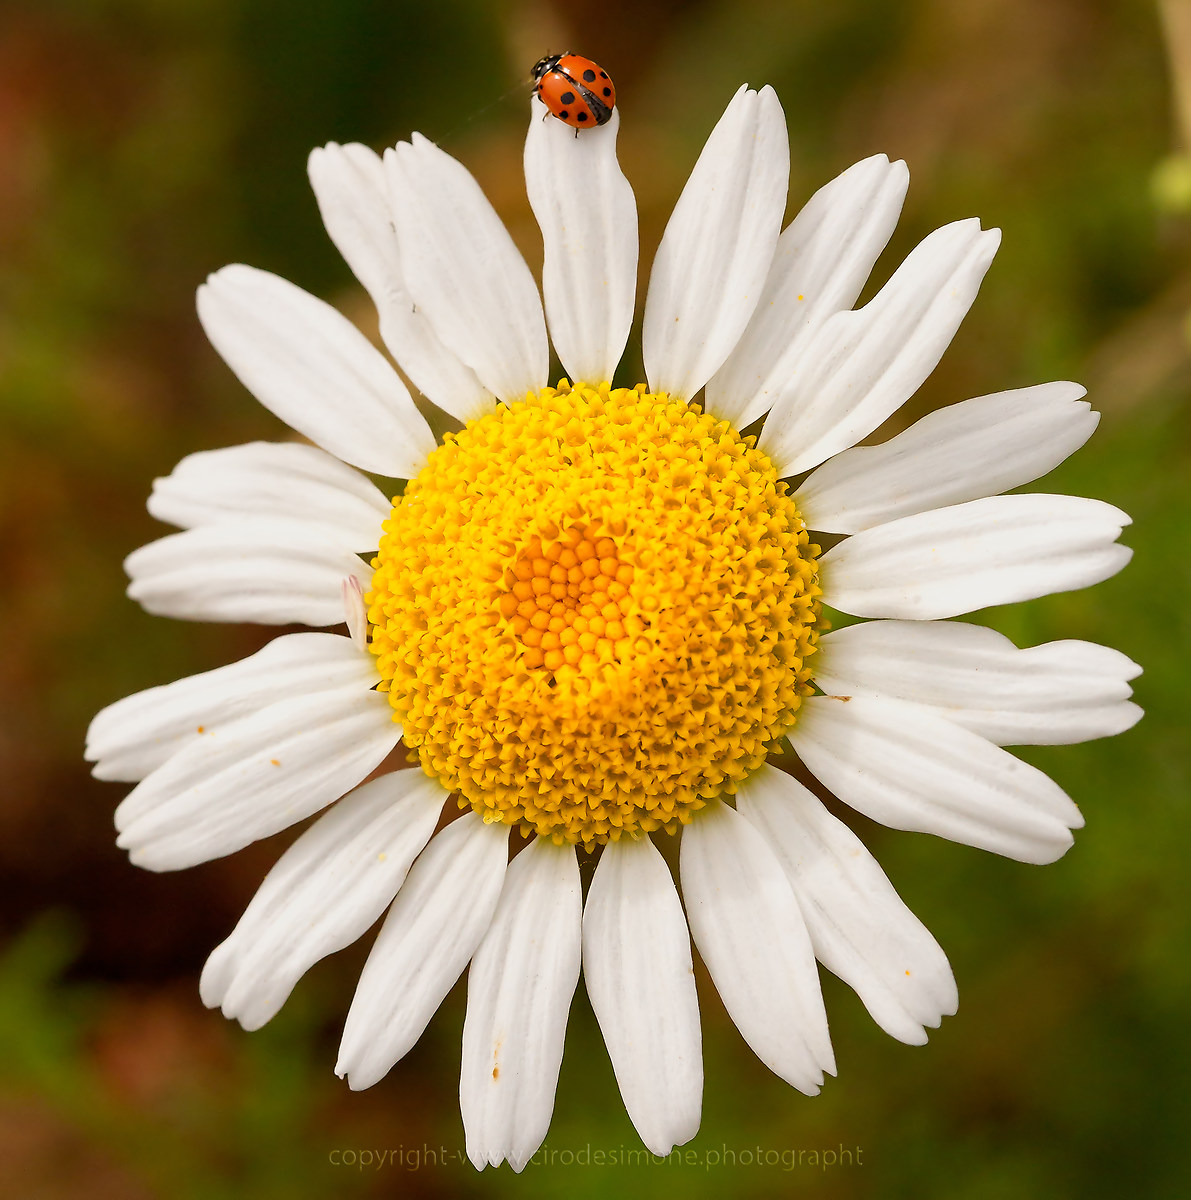 Ladybug and daisy...